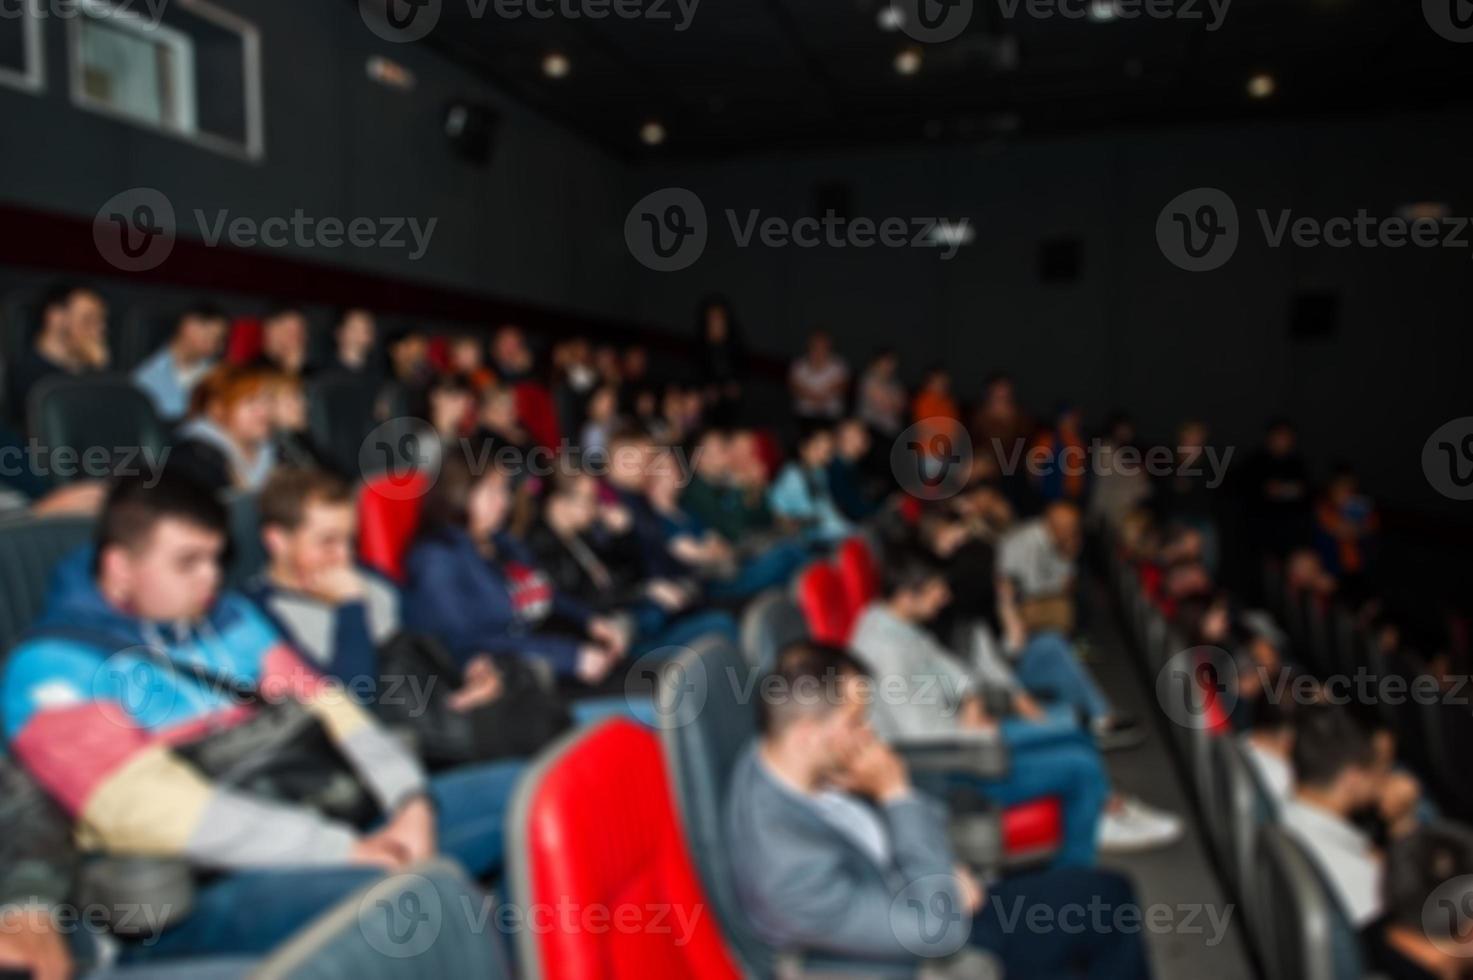 foto sfocata delle persone del pubblico nel cinema.